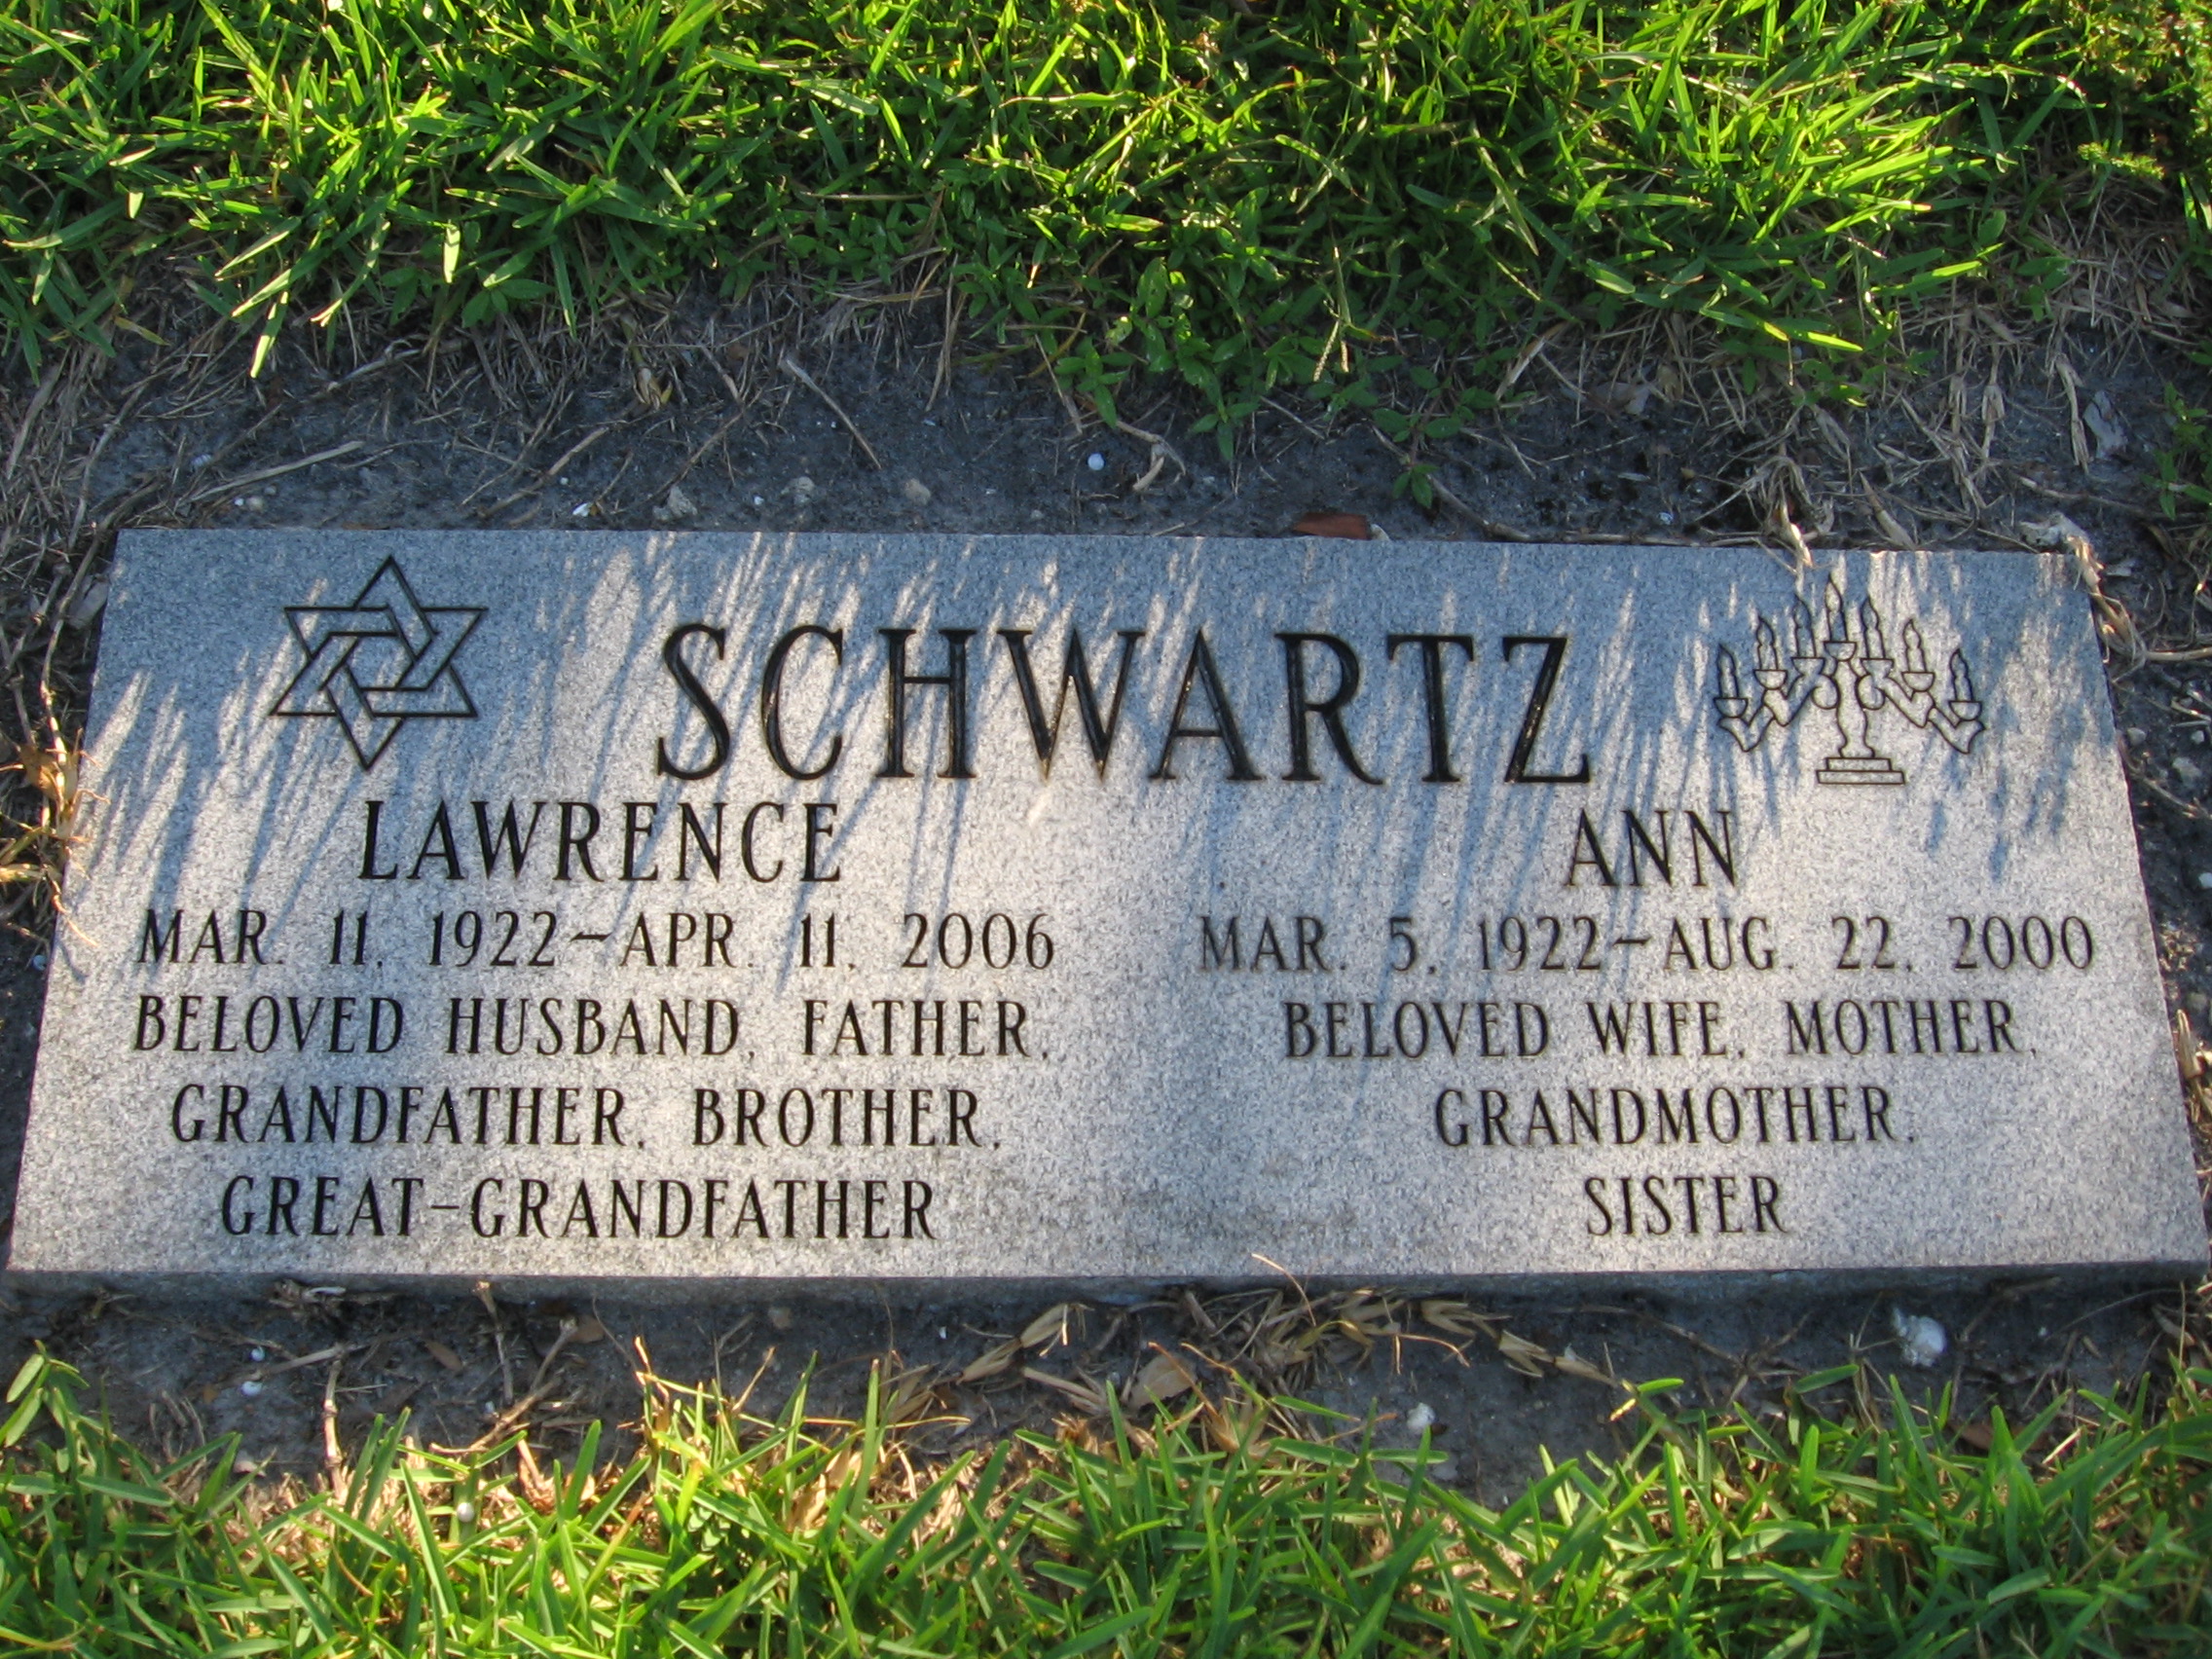 Lawrence Schwartz